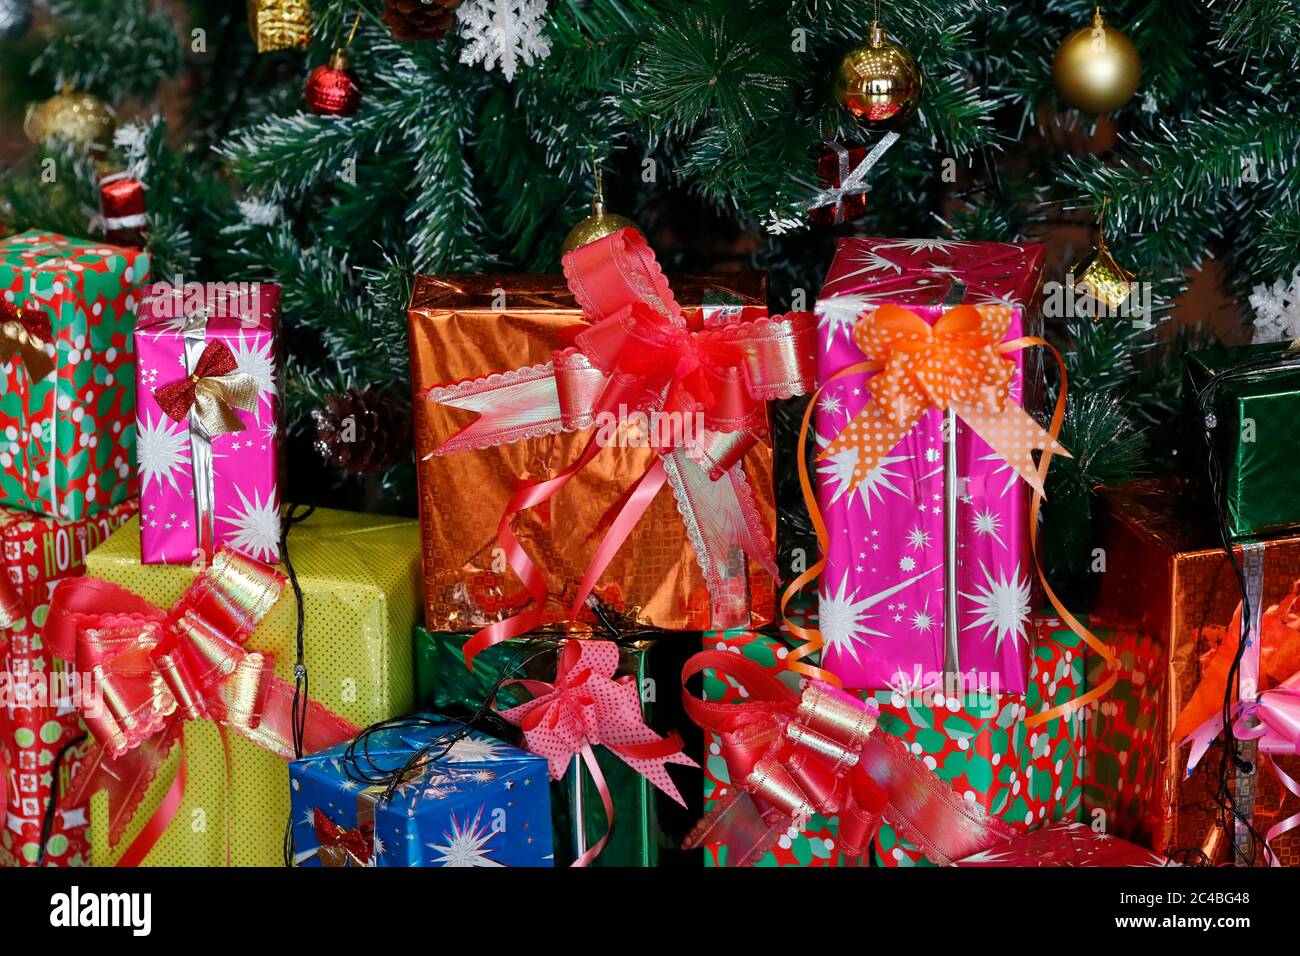 Geschenke unter dem dekorierten künstlichen weihnachtsbaum Stockfoto